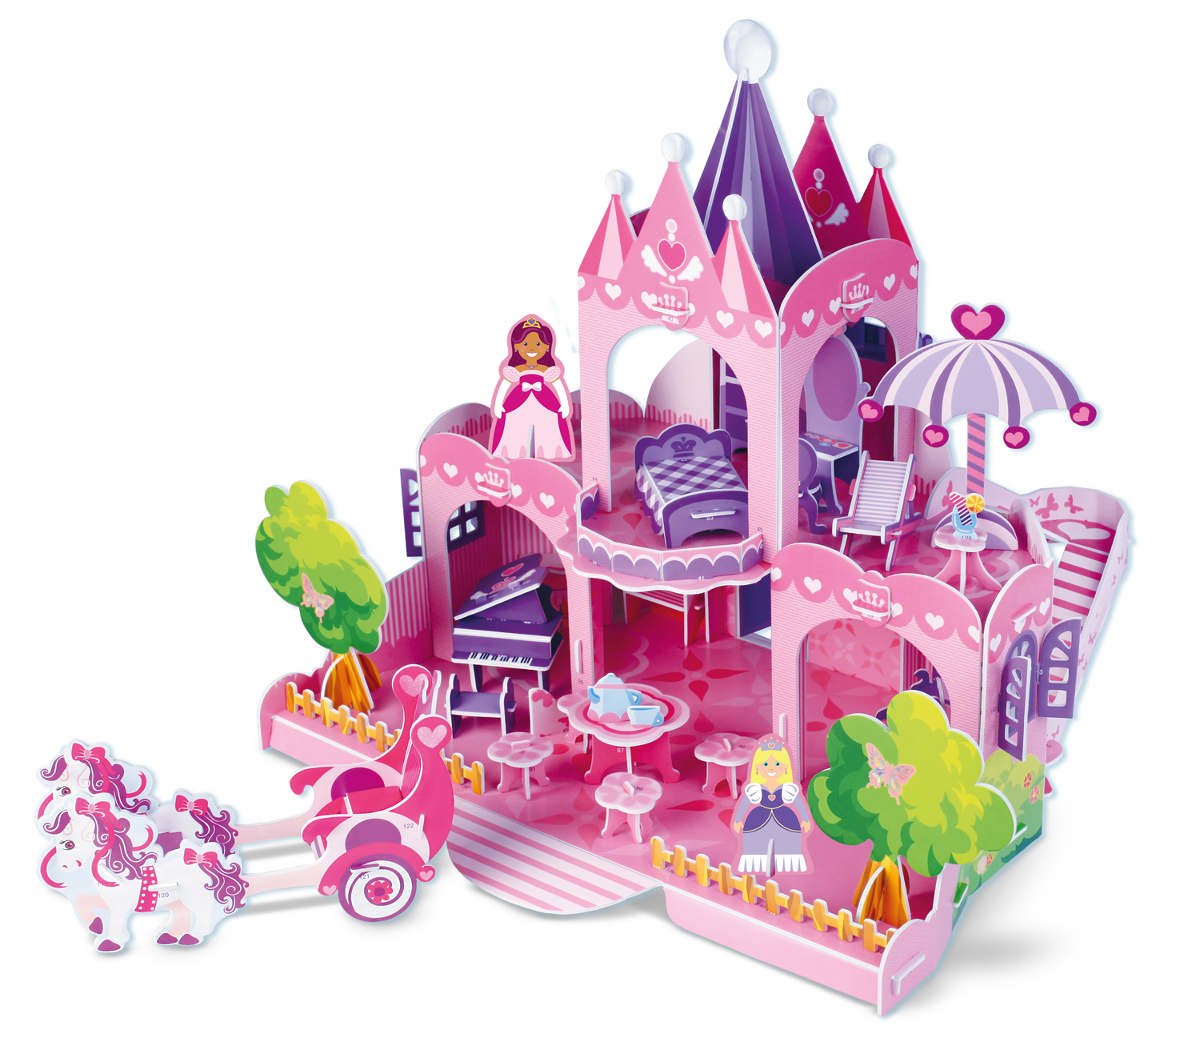 Ice Princess Princess Jigsaw Puzzle By Jacarou Puzzles